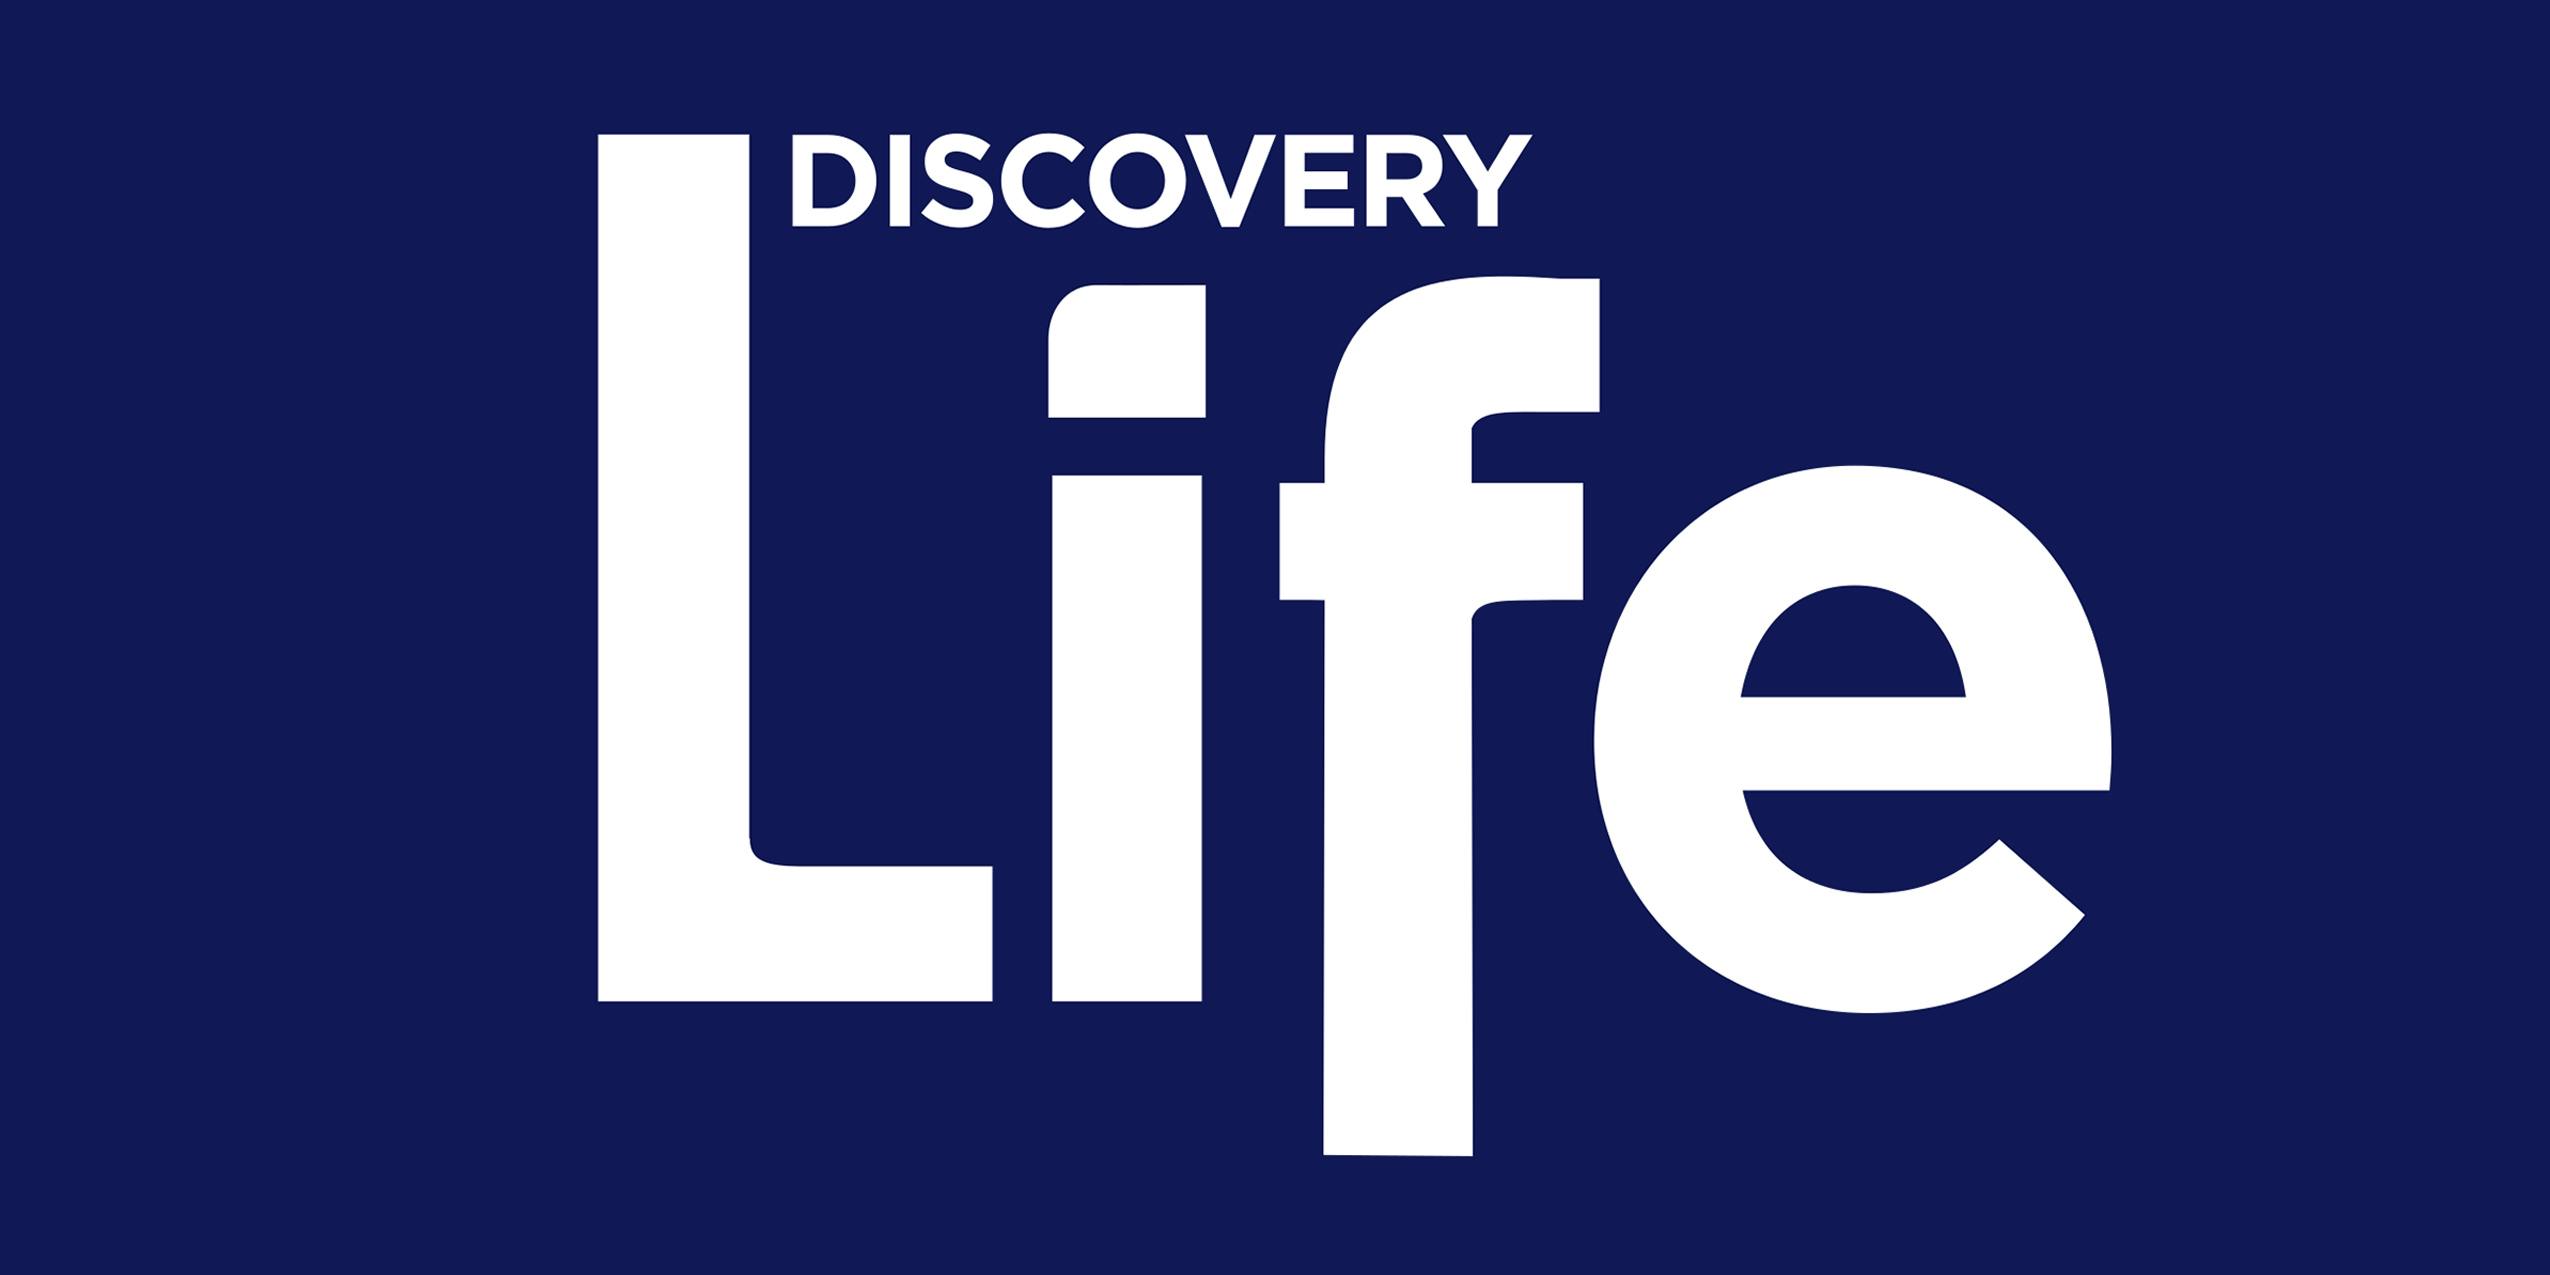 Дискавери лайф. Discover Life.